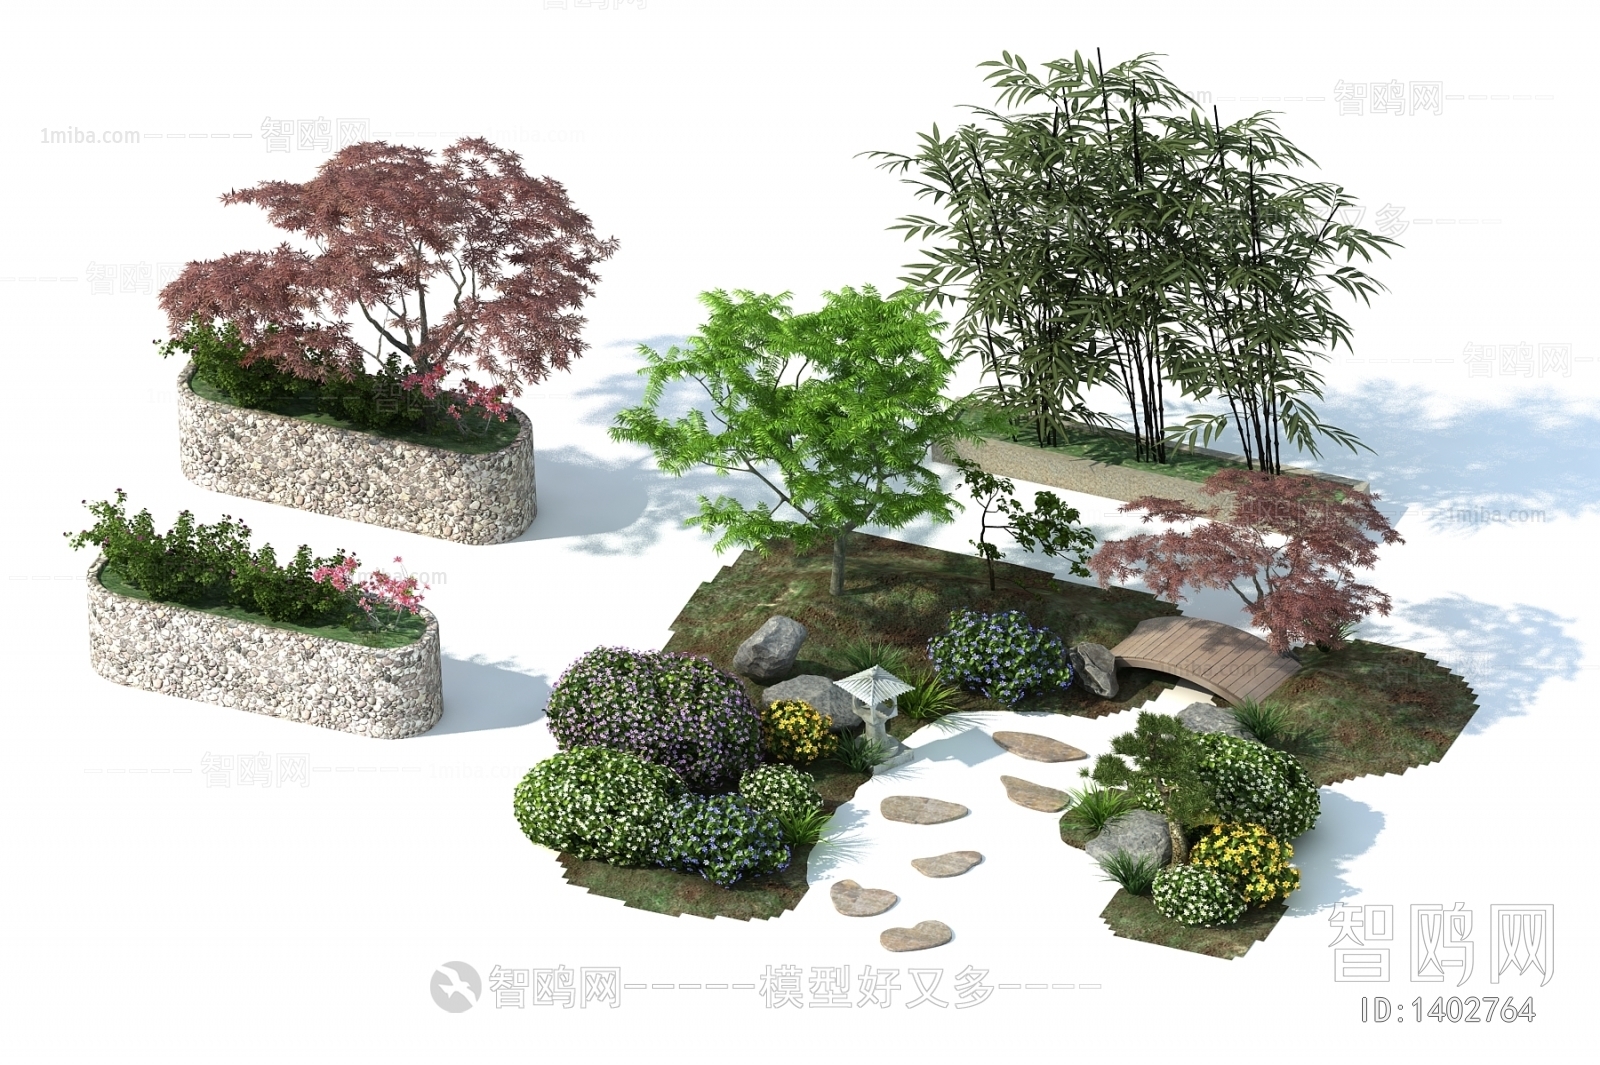 New Chinese Style Tree/shrub/grass